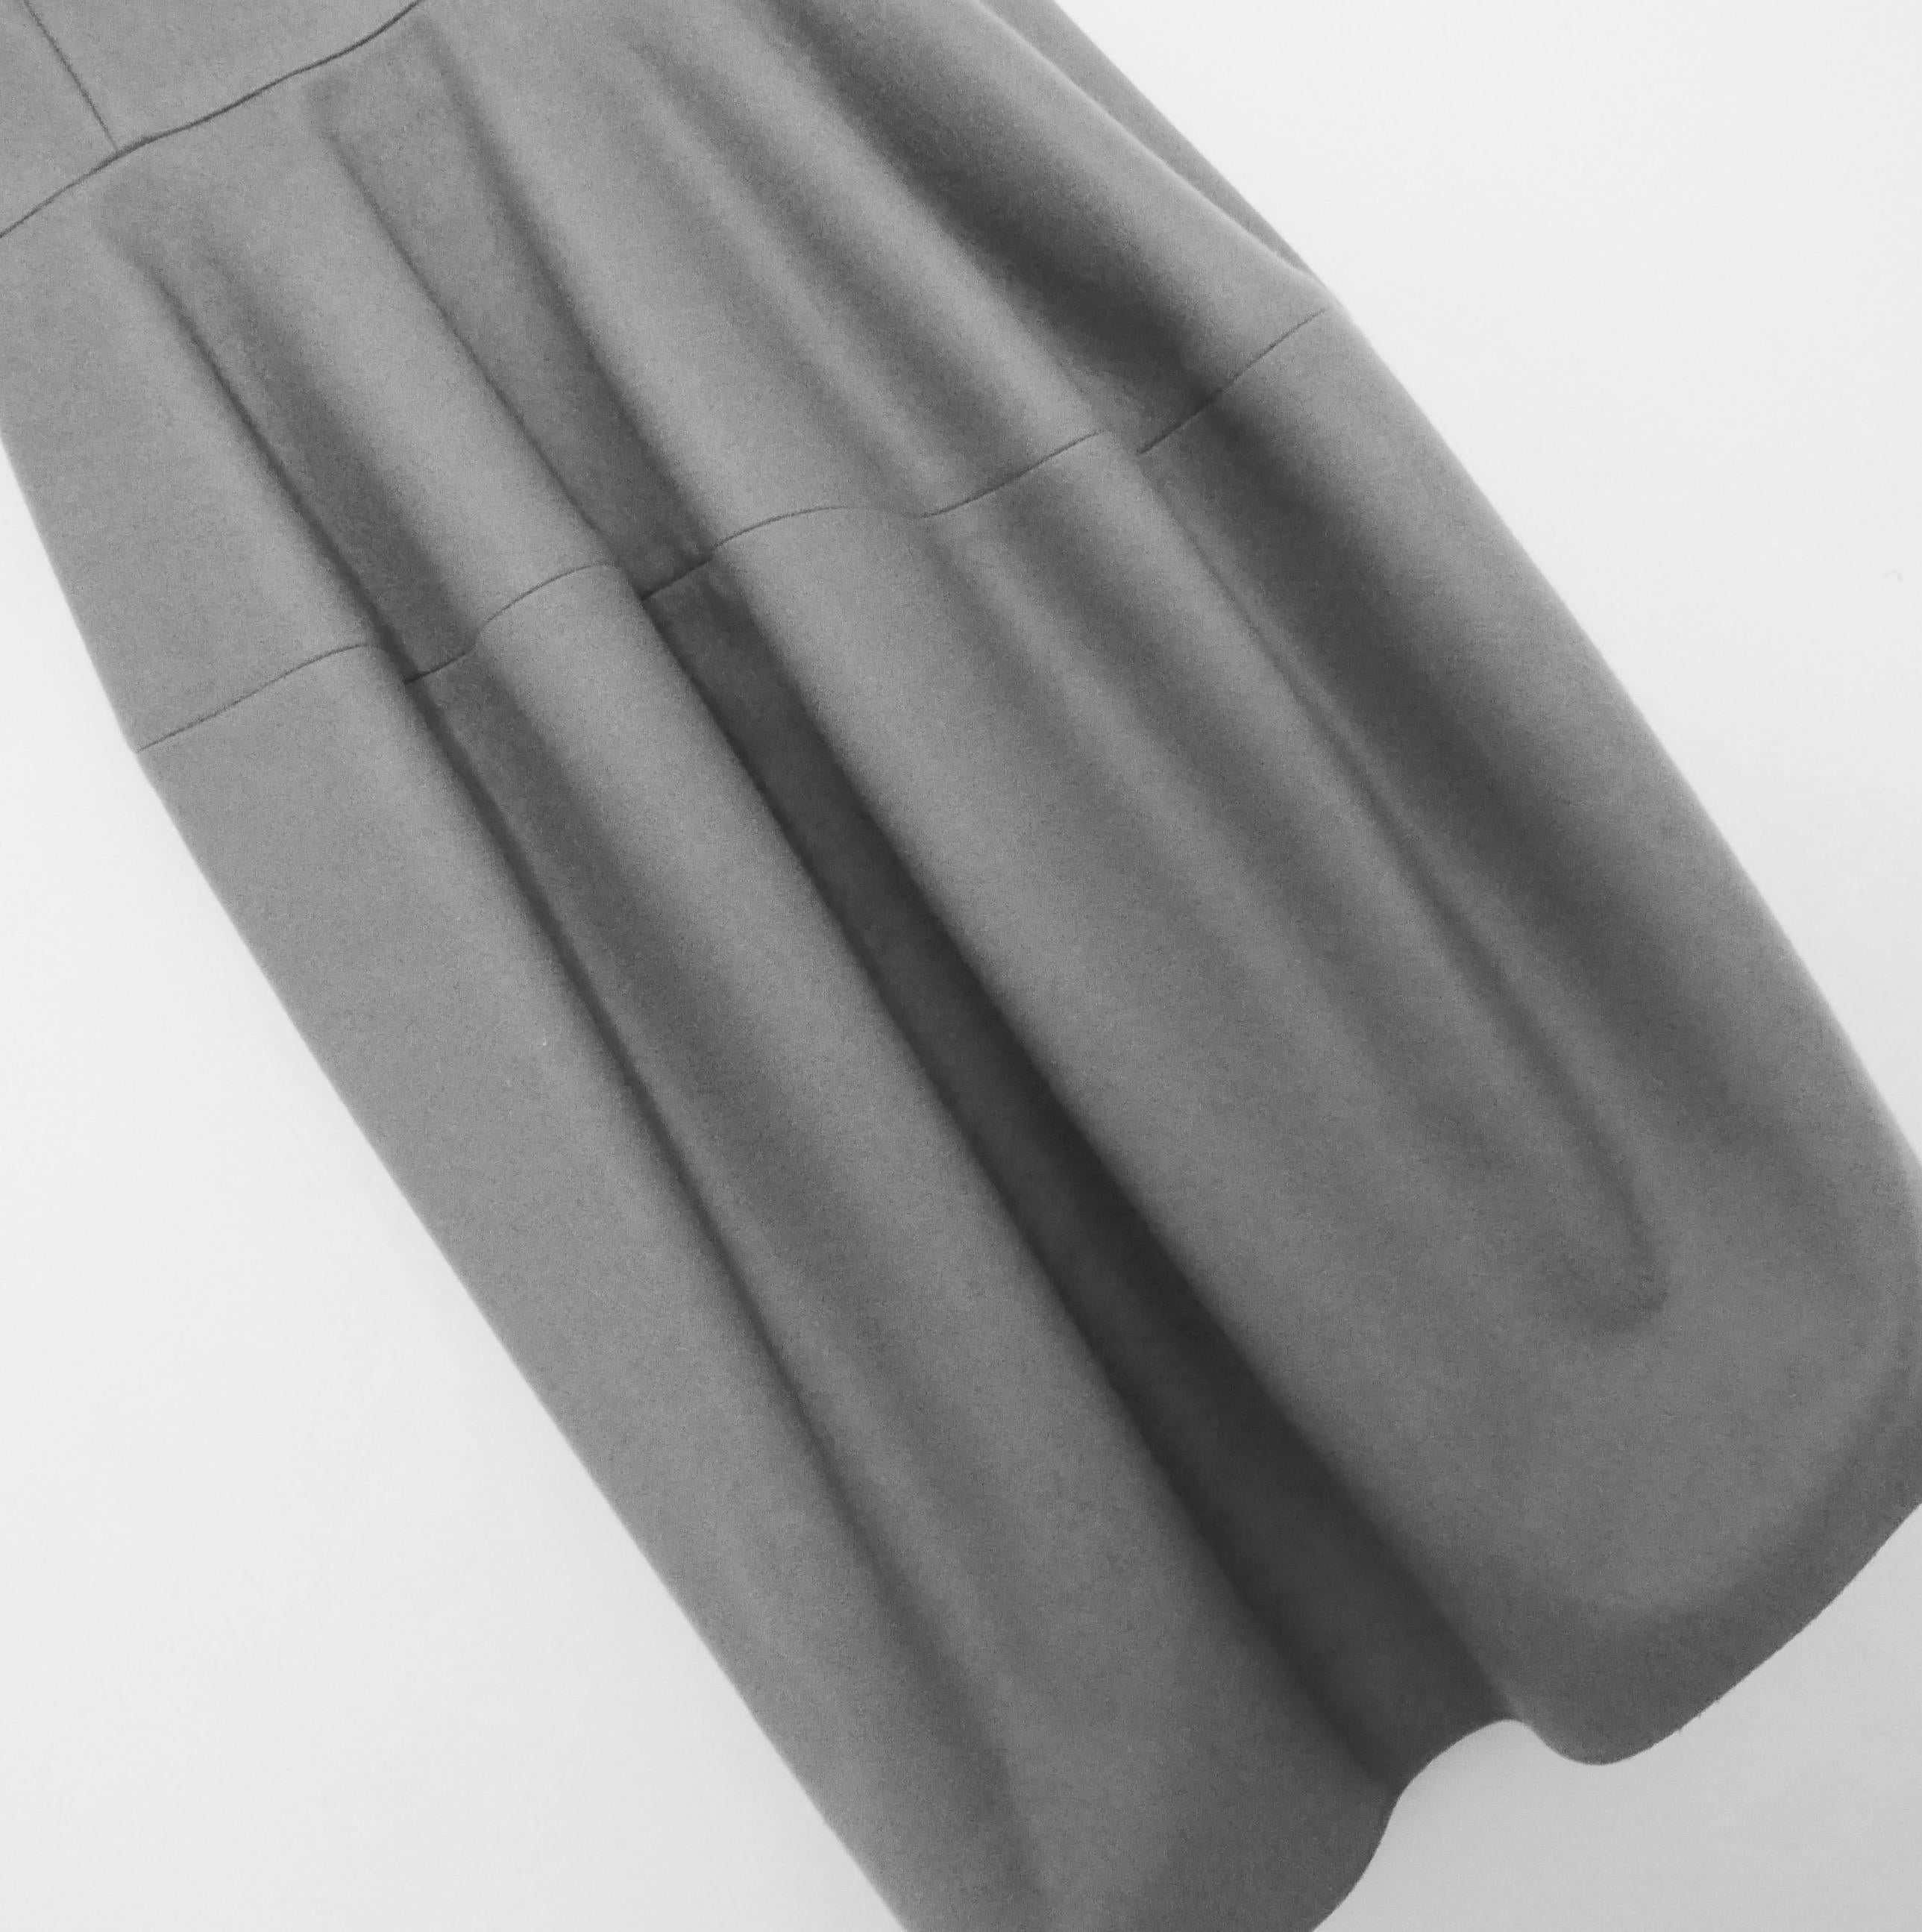 Ikonisches, ungetragenes, archiviertes Kleid aus der Yves Saint Laurent-Kollektion Herbst 2008 von Stefano Pilati - eine der wichtigsten Kollektionen von Pilati für das Label. 

Es ist aus superglattem und weichem taubengrauem Kaschmir gefertigt und